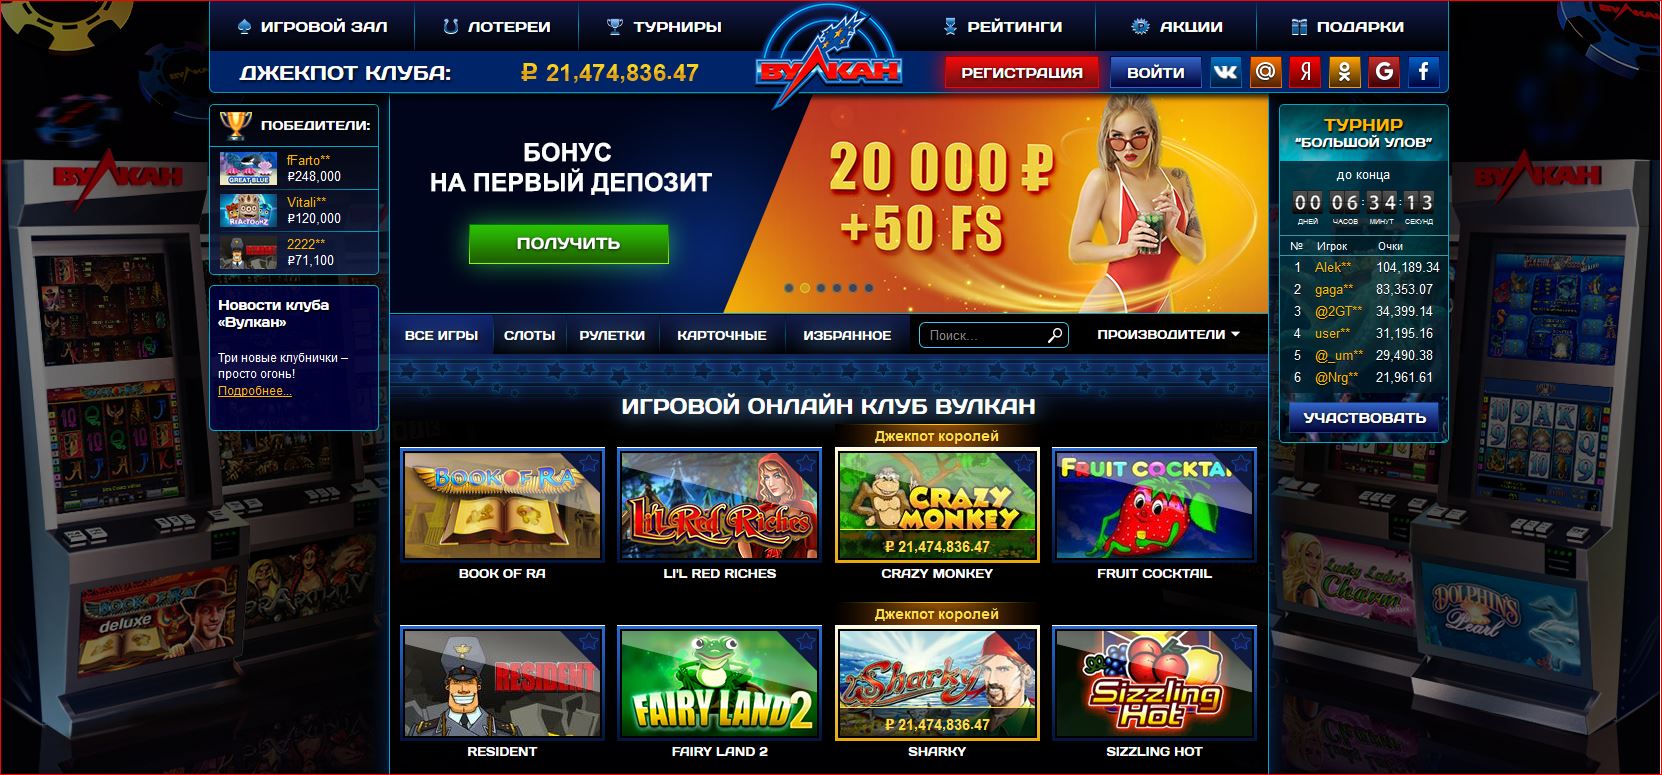 Вулкан казино официальный сайт мобильная версия скачать бесплатно играть в игровые автоматы онлайн вулкан